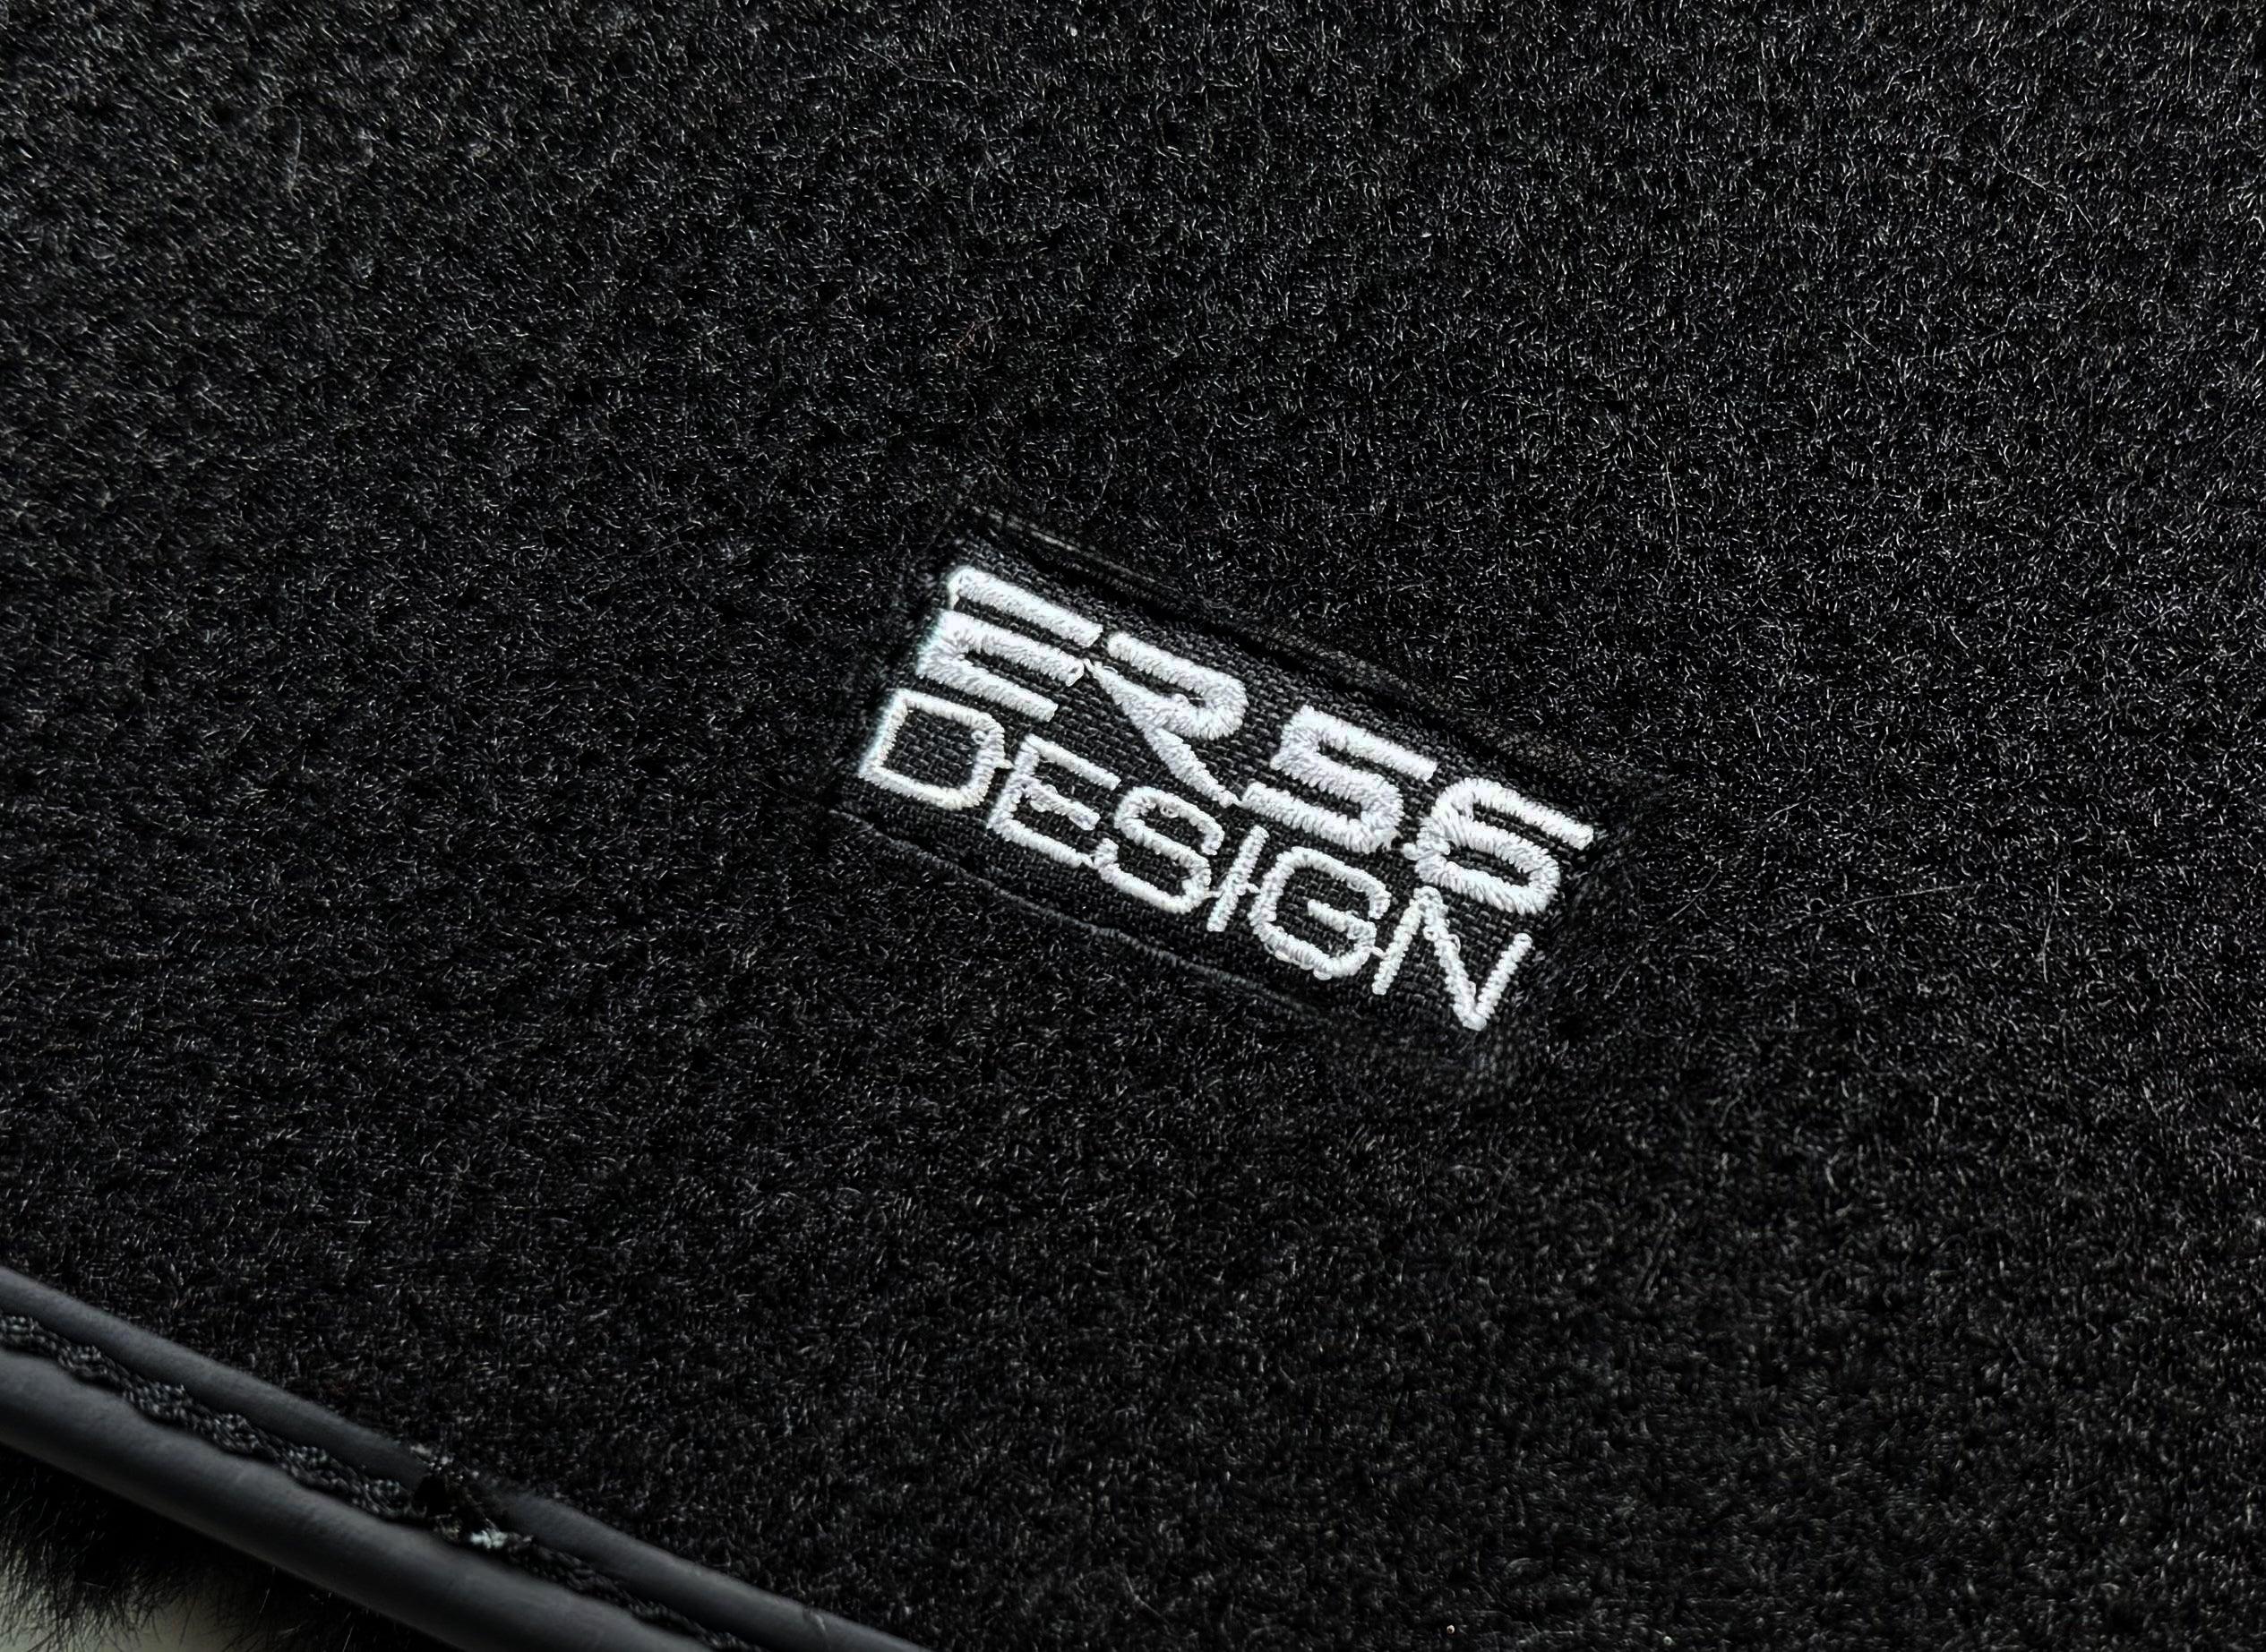 Black Sheepskin Floor Mats For BMW M3 E30 ER56 Design